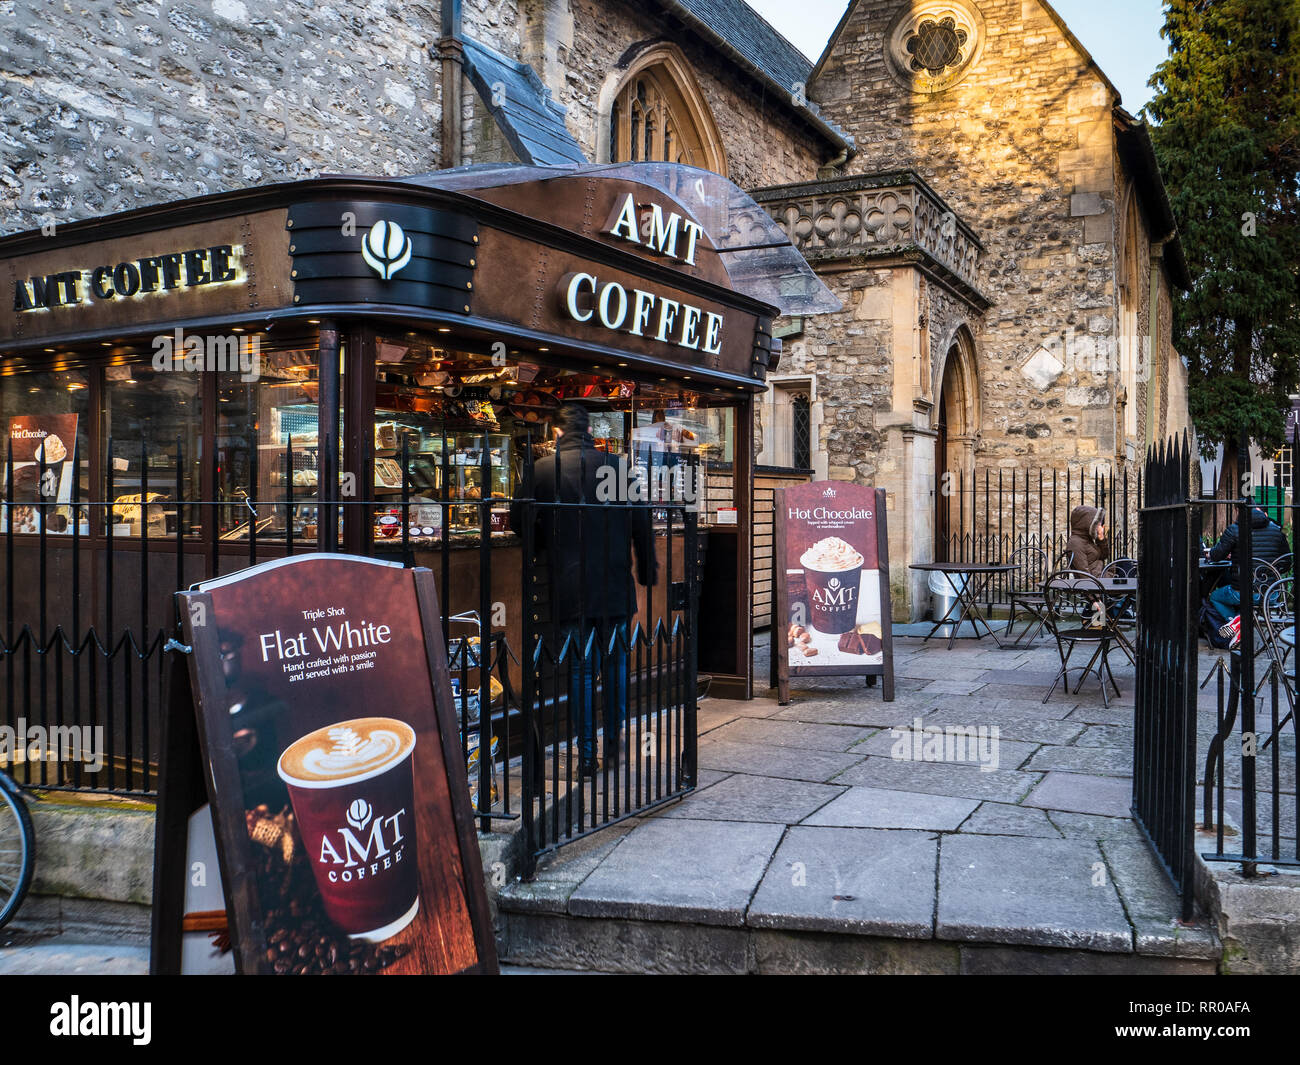 Café de l'AMT stand dans centre d'Oxford au Royaume-Uni. Café de l'AMT est une chaîne de cafés au Royaume-Uni principalement situés dans les gares ferroviaires. Banque D'Images